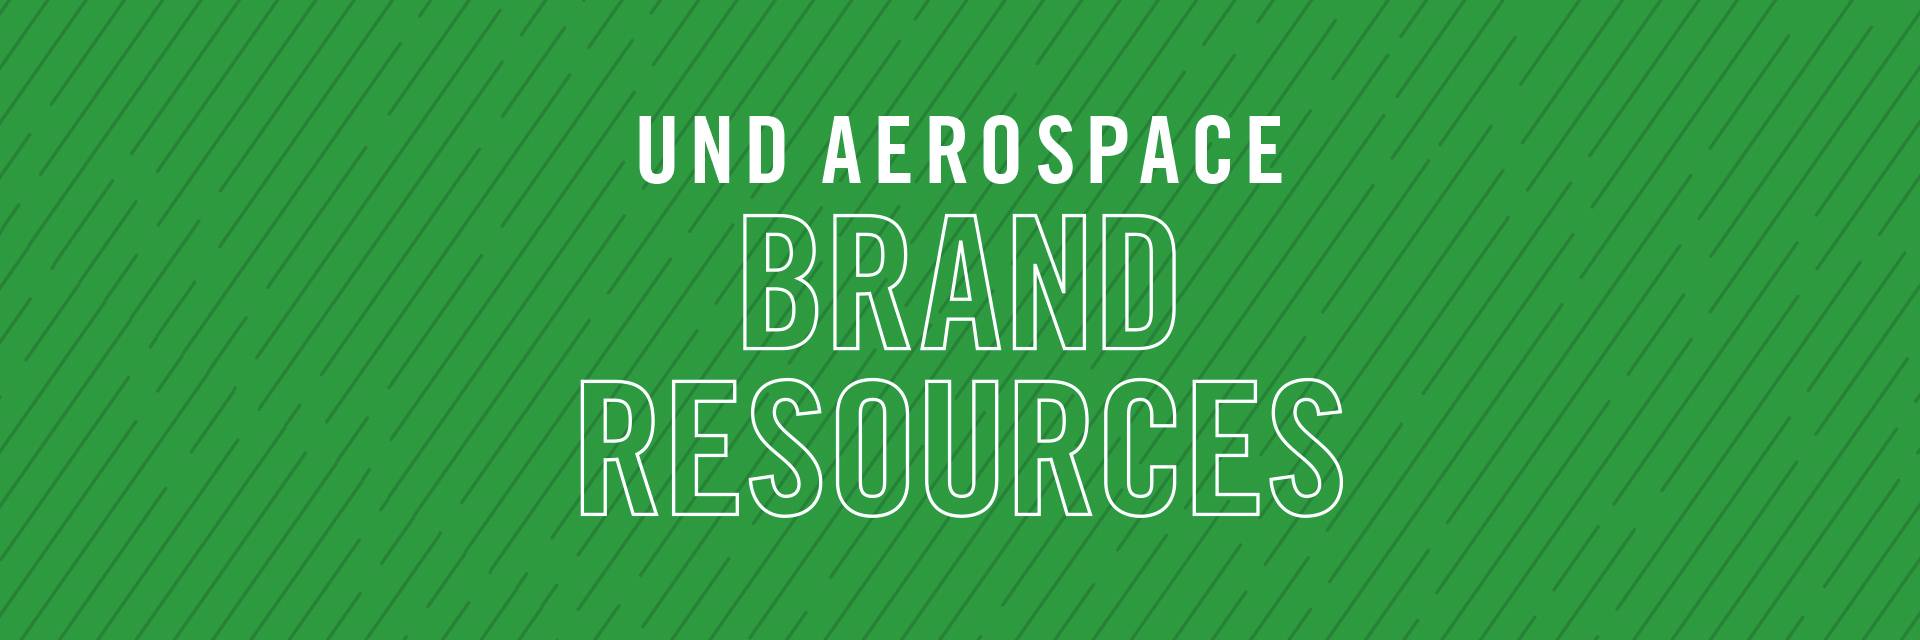 UND Aerospace Brand Resources